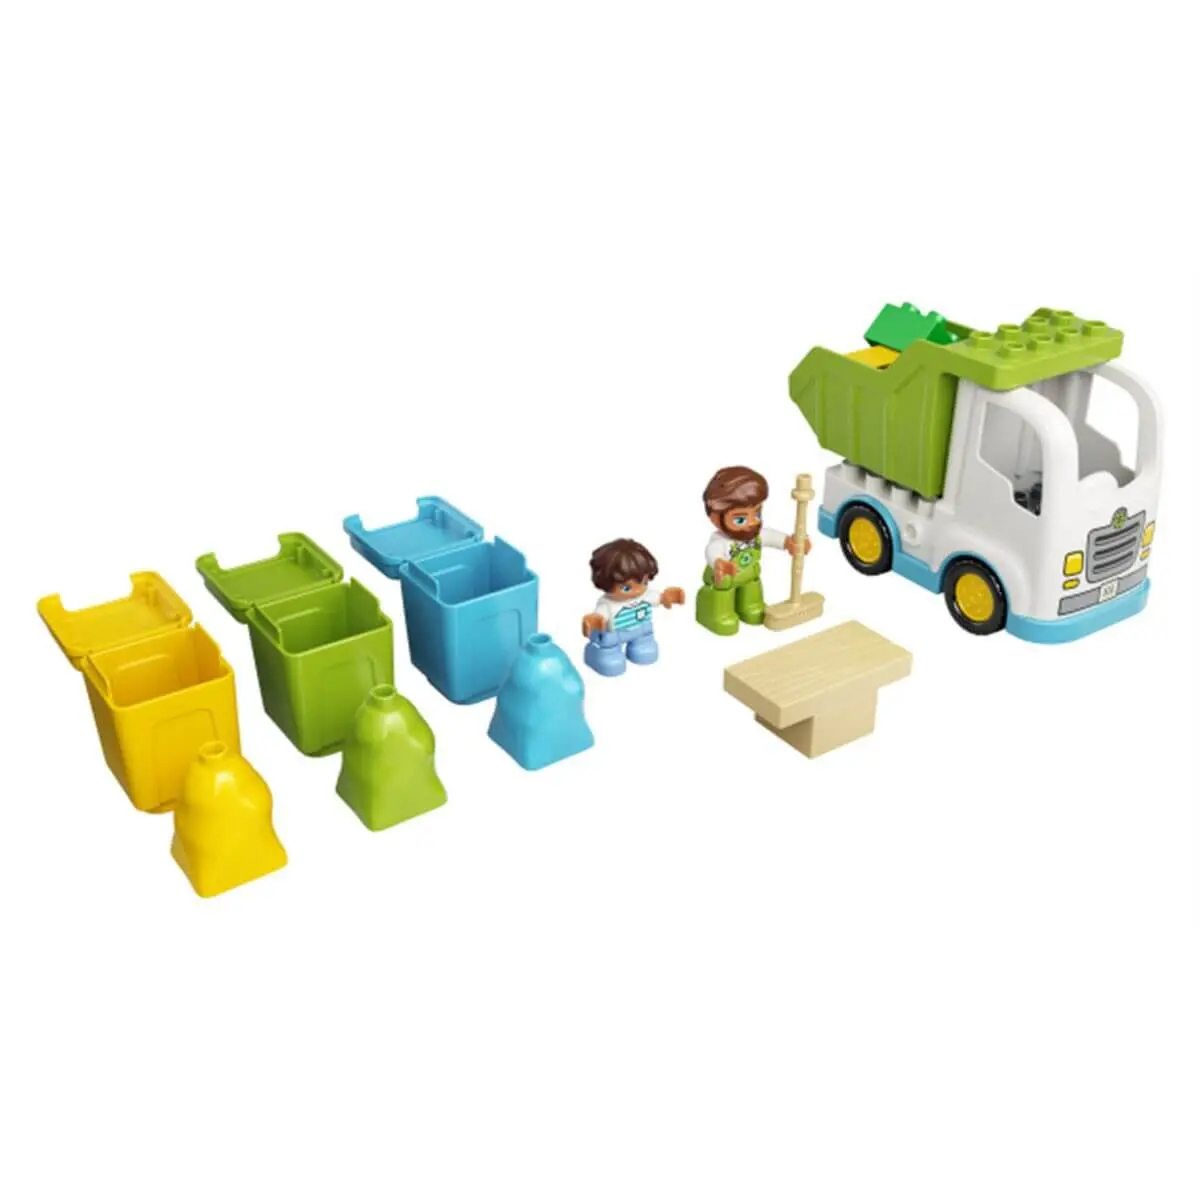 Қоқыс тасушы және қоқысты бөлек жинауға арналған контейнерлер LEGO Duplo Дупло конструкторы 